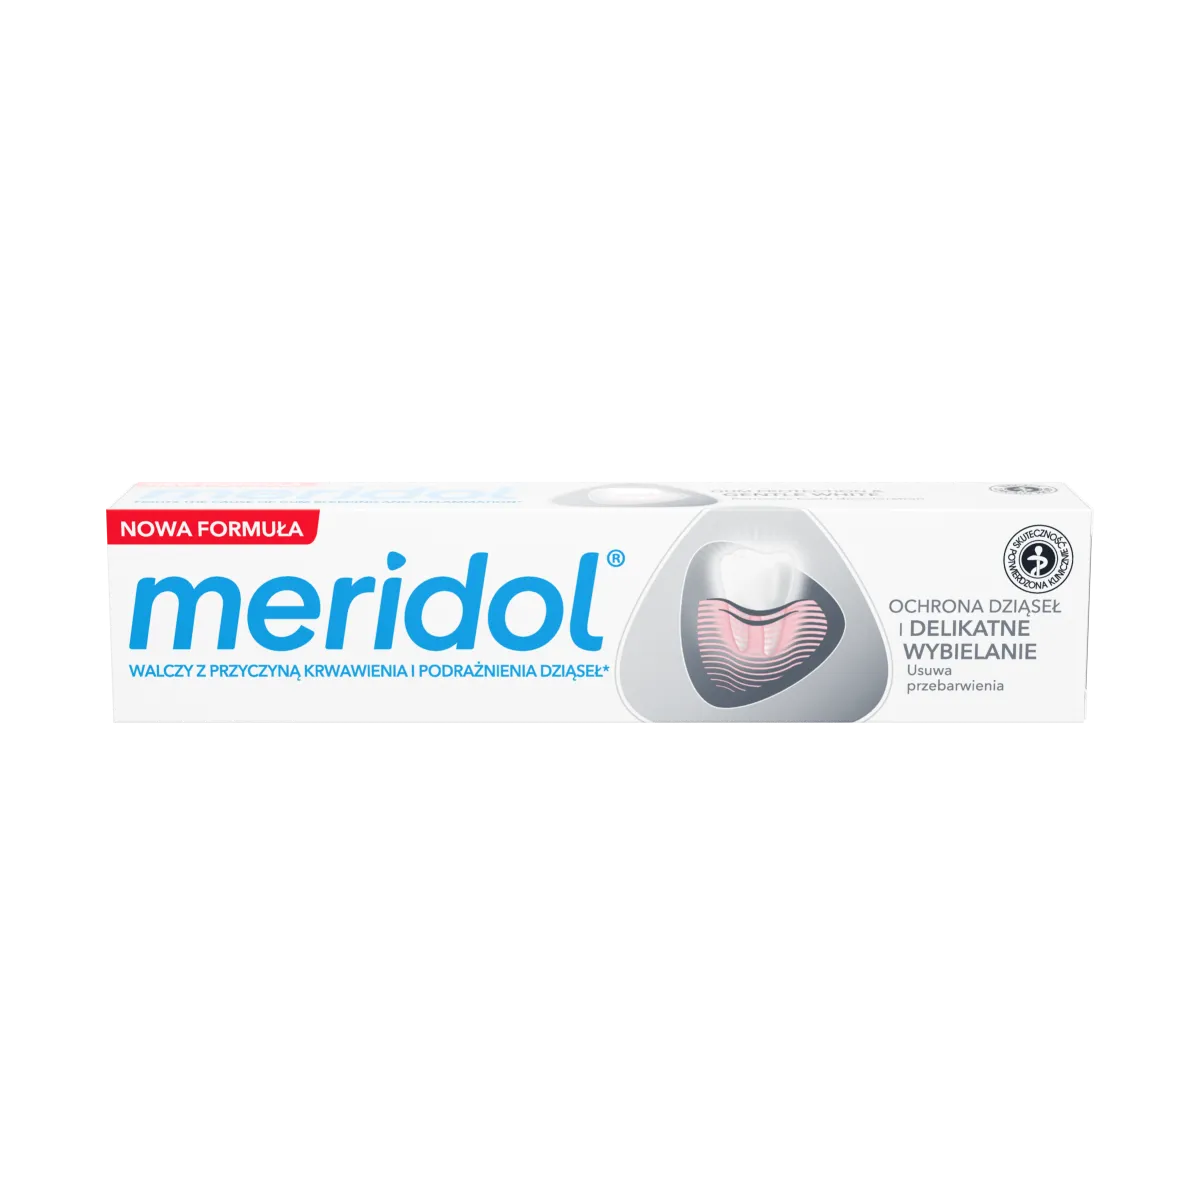 meridol Ochrona Dziąseł & Delikatne Wybielanie pasta do zębów, 75 ml